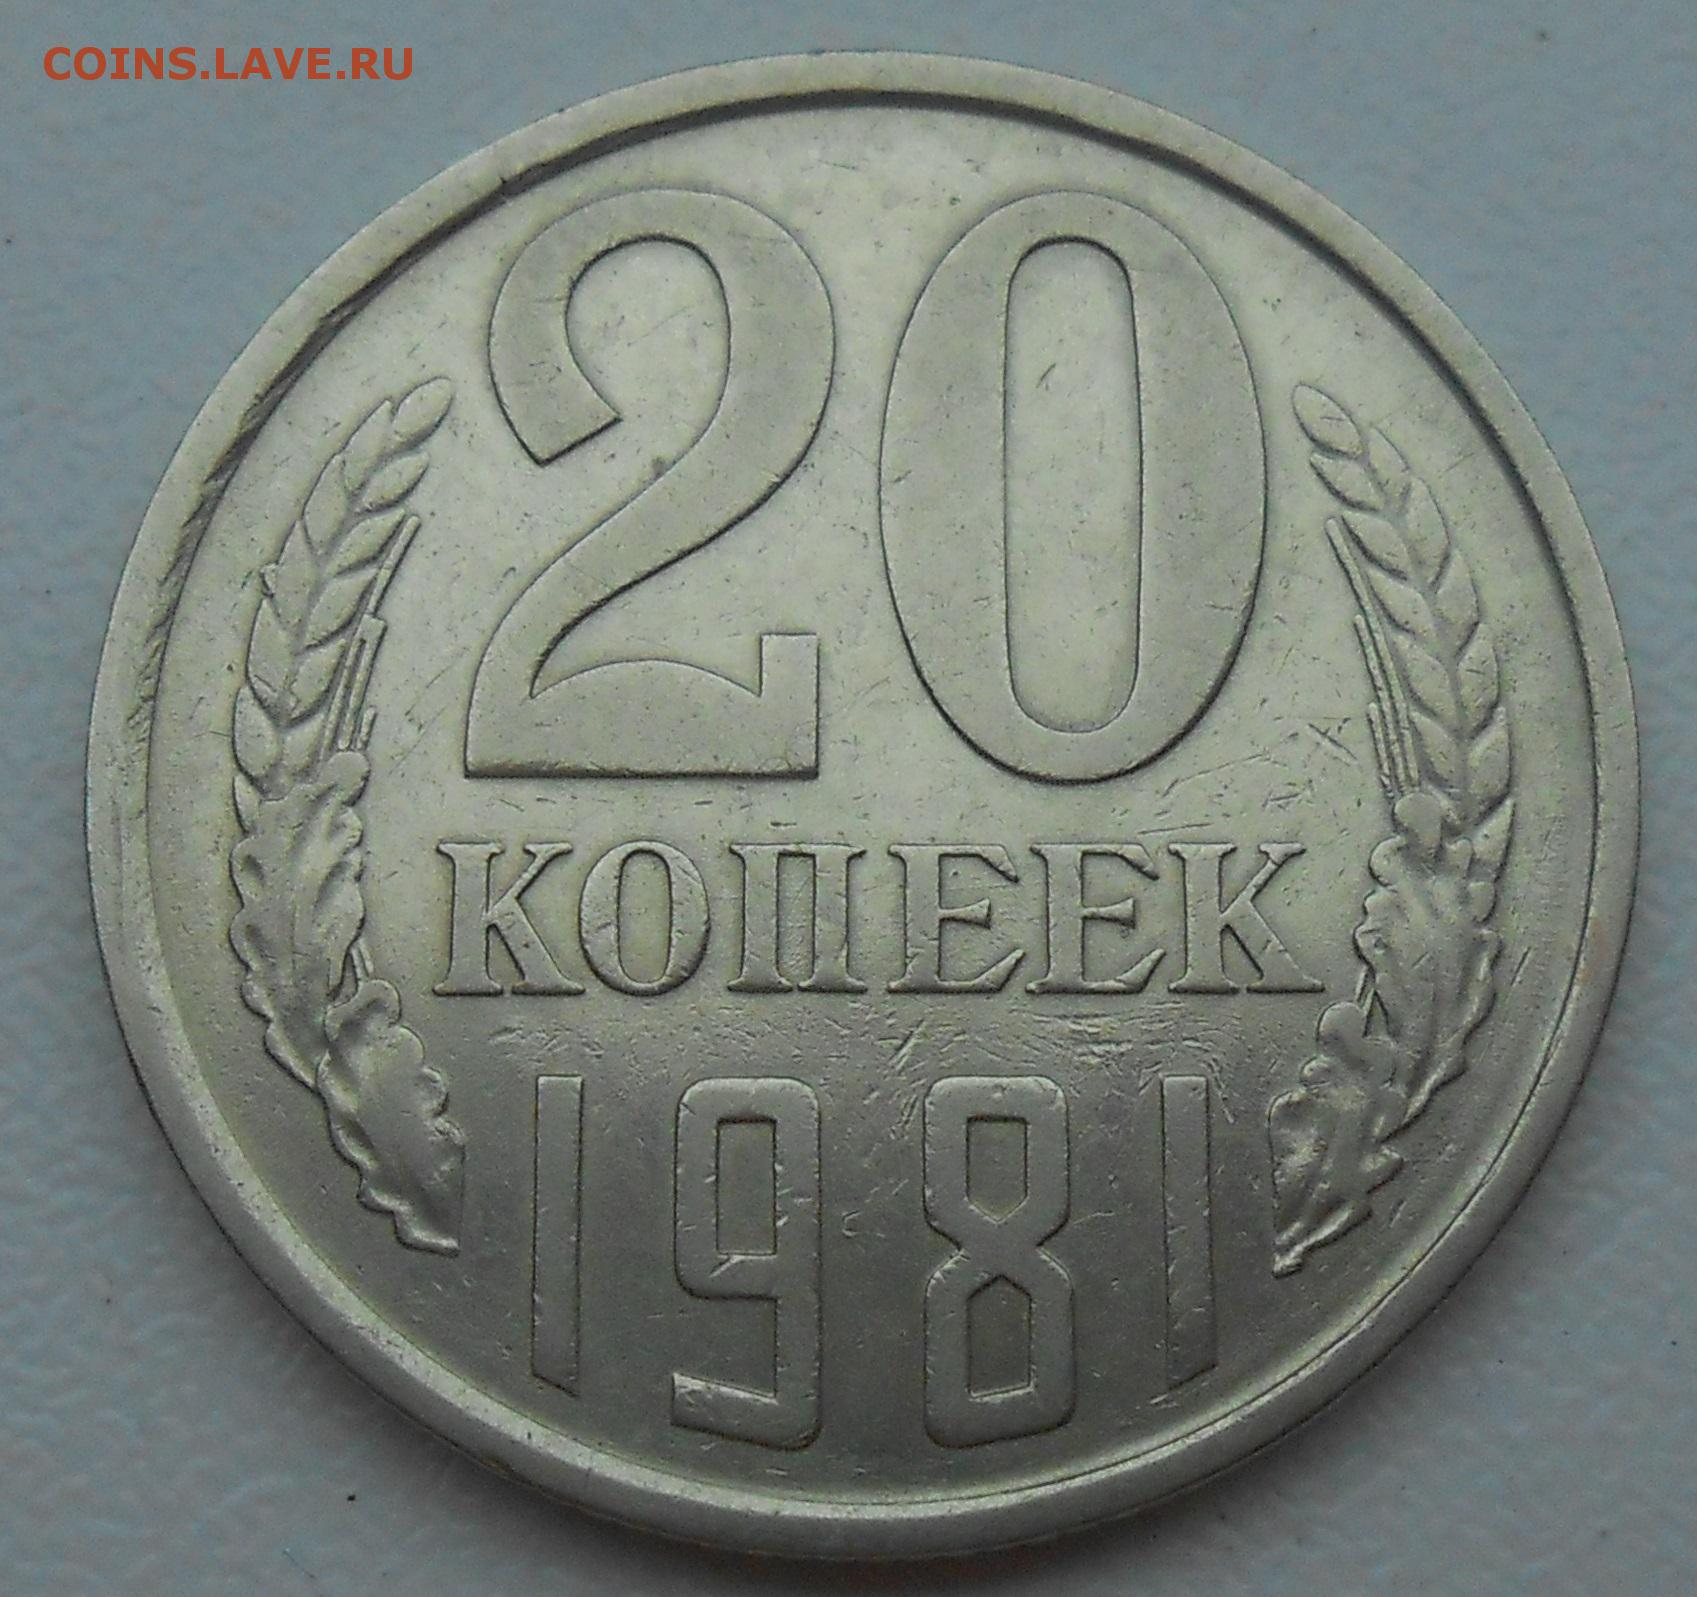 5 копеек 61. 20 Копеек 1991 года. 20 Копеек до 1961 года. 20 Копеек 61 года. Монеты СССР 61 года.